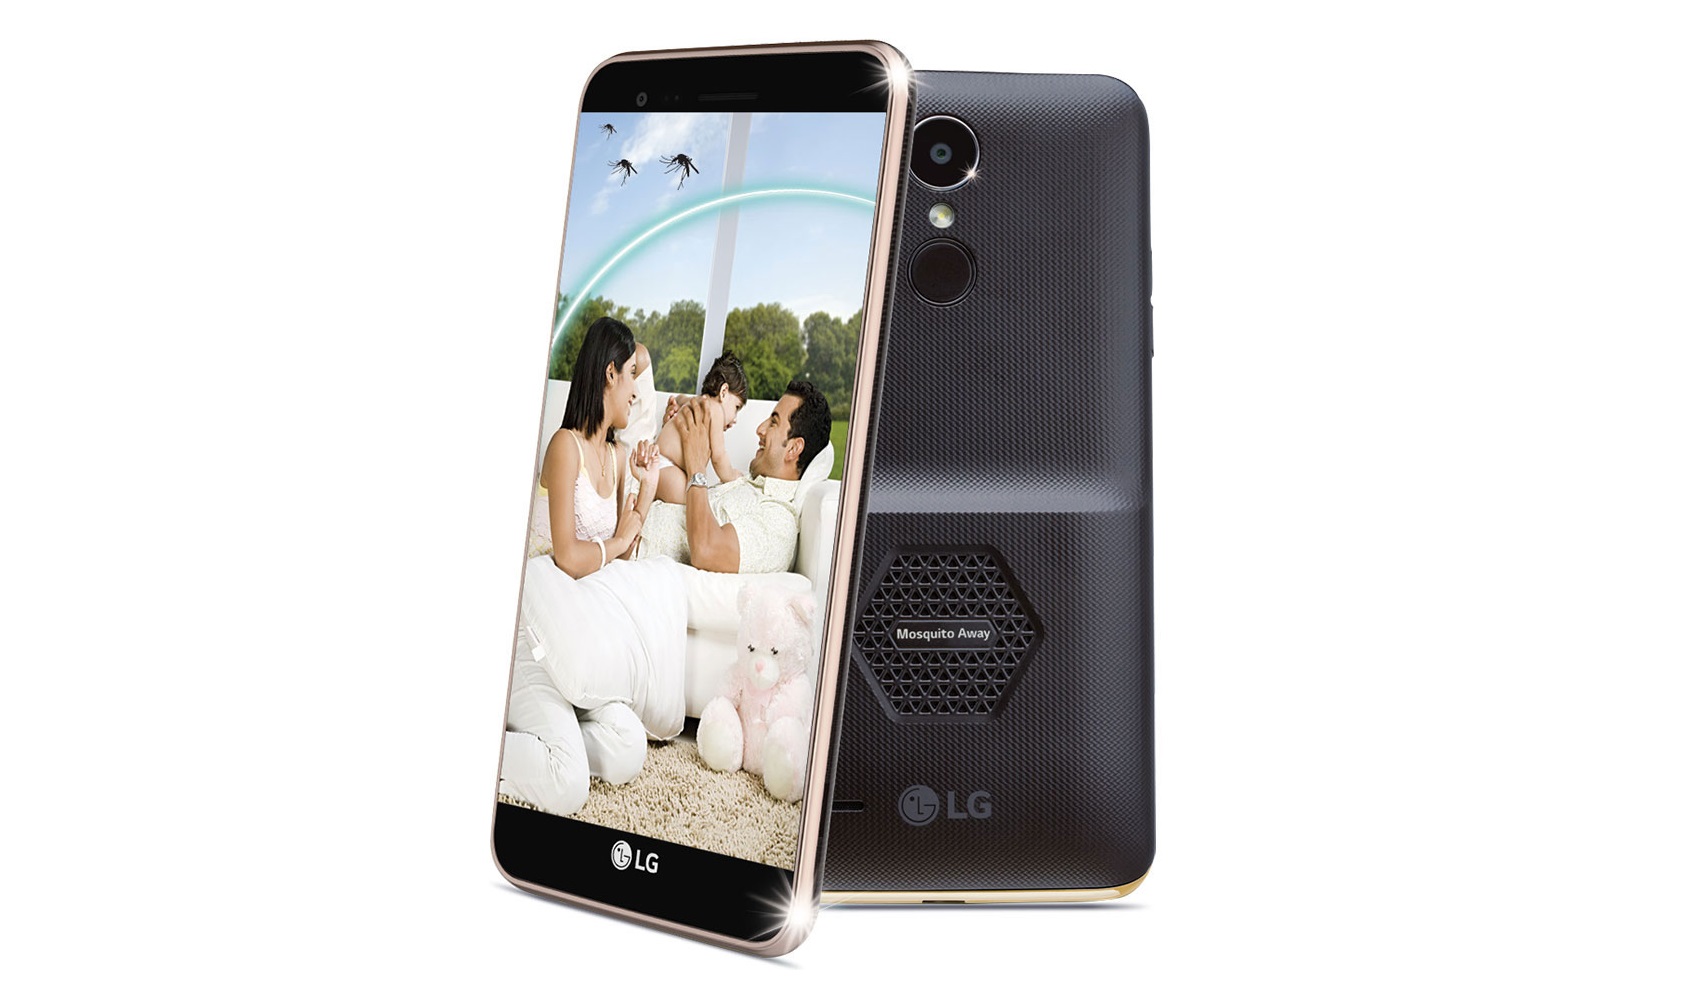 Smartphone da LG tem repelente ultrassônico de mosquitos